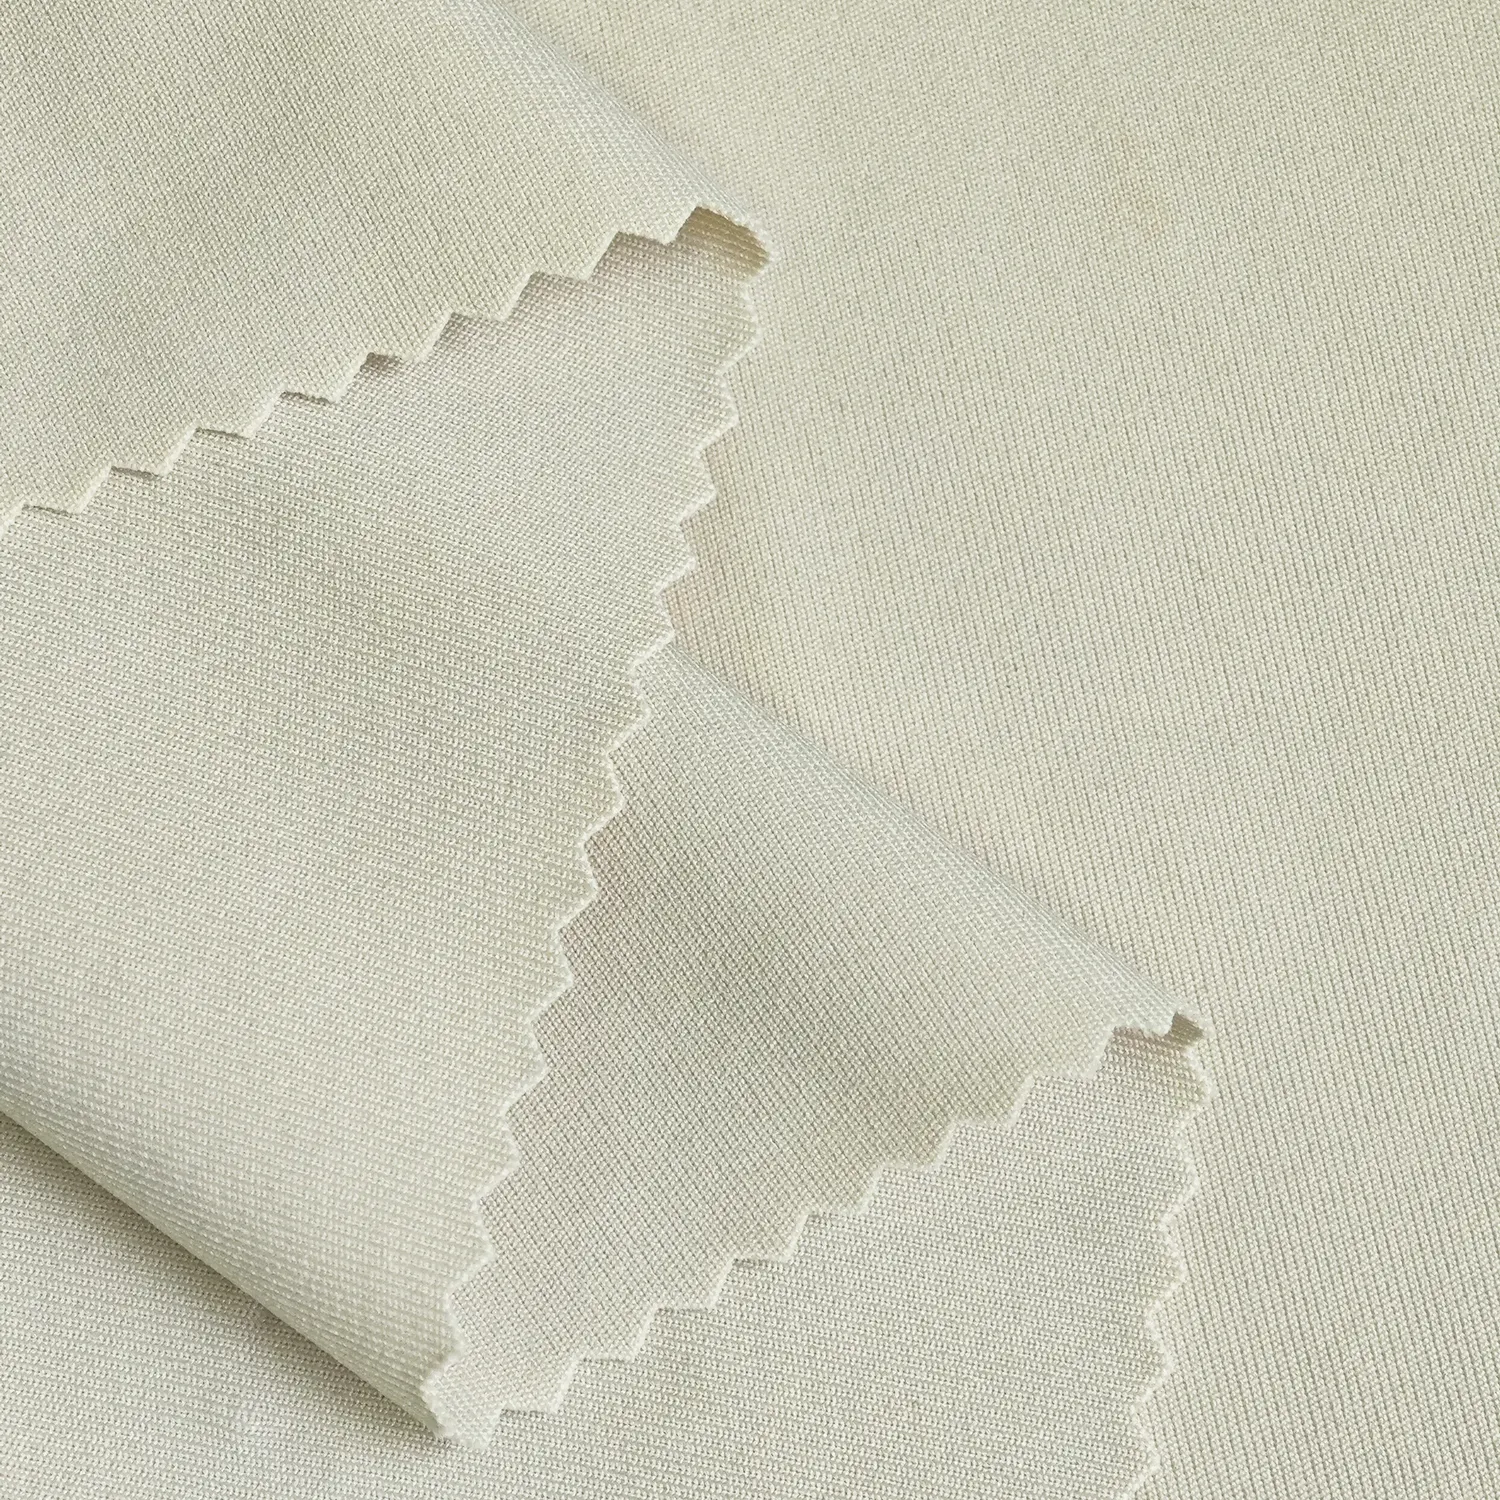 Hochwertiger Wicking 4-Wege-Stretch 90% Polyester 10% Elasthan gestrickt ineinandergreifend Taucher venezianischer Stoff für Anzug Hosen